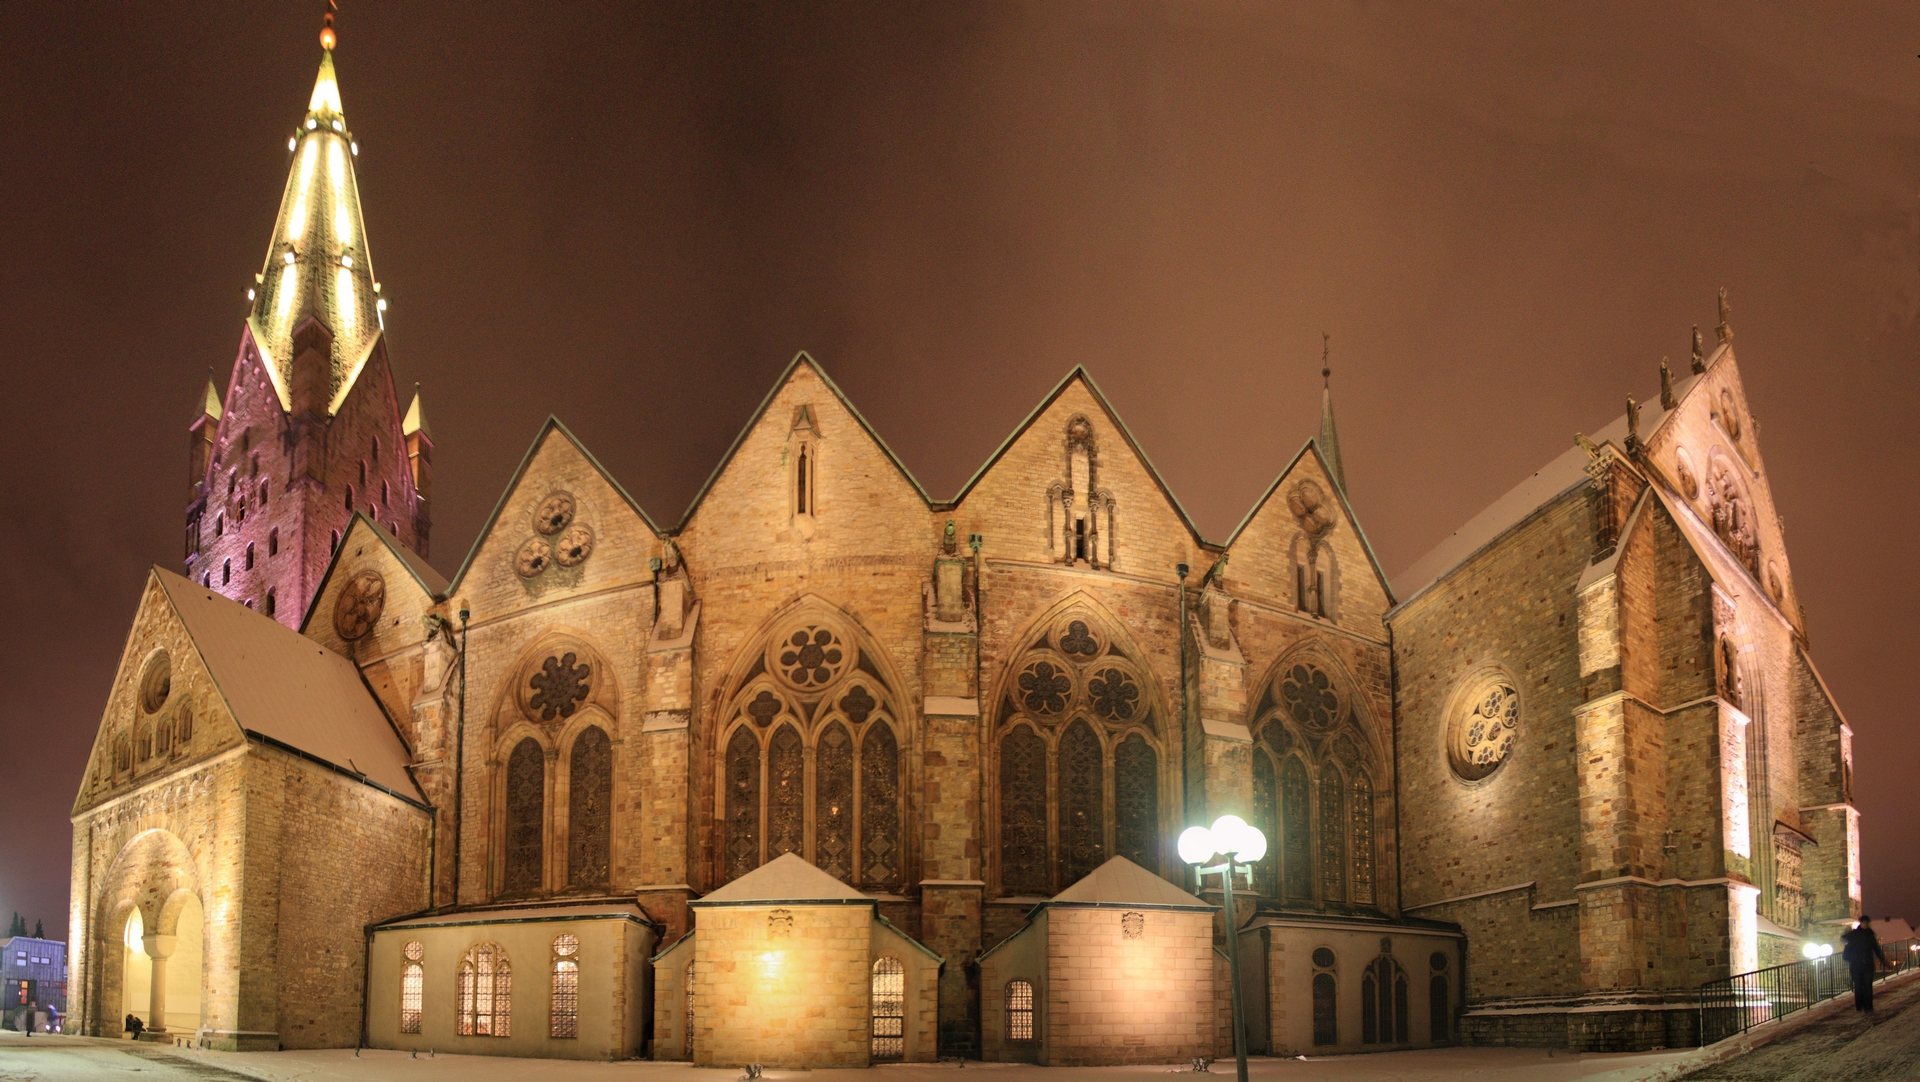 La cathédrale de Paderborn, au nord-ouest de l'Allemagne (photo wikimedia commons Athde CC0 1.0)